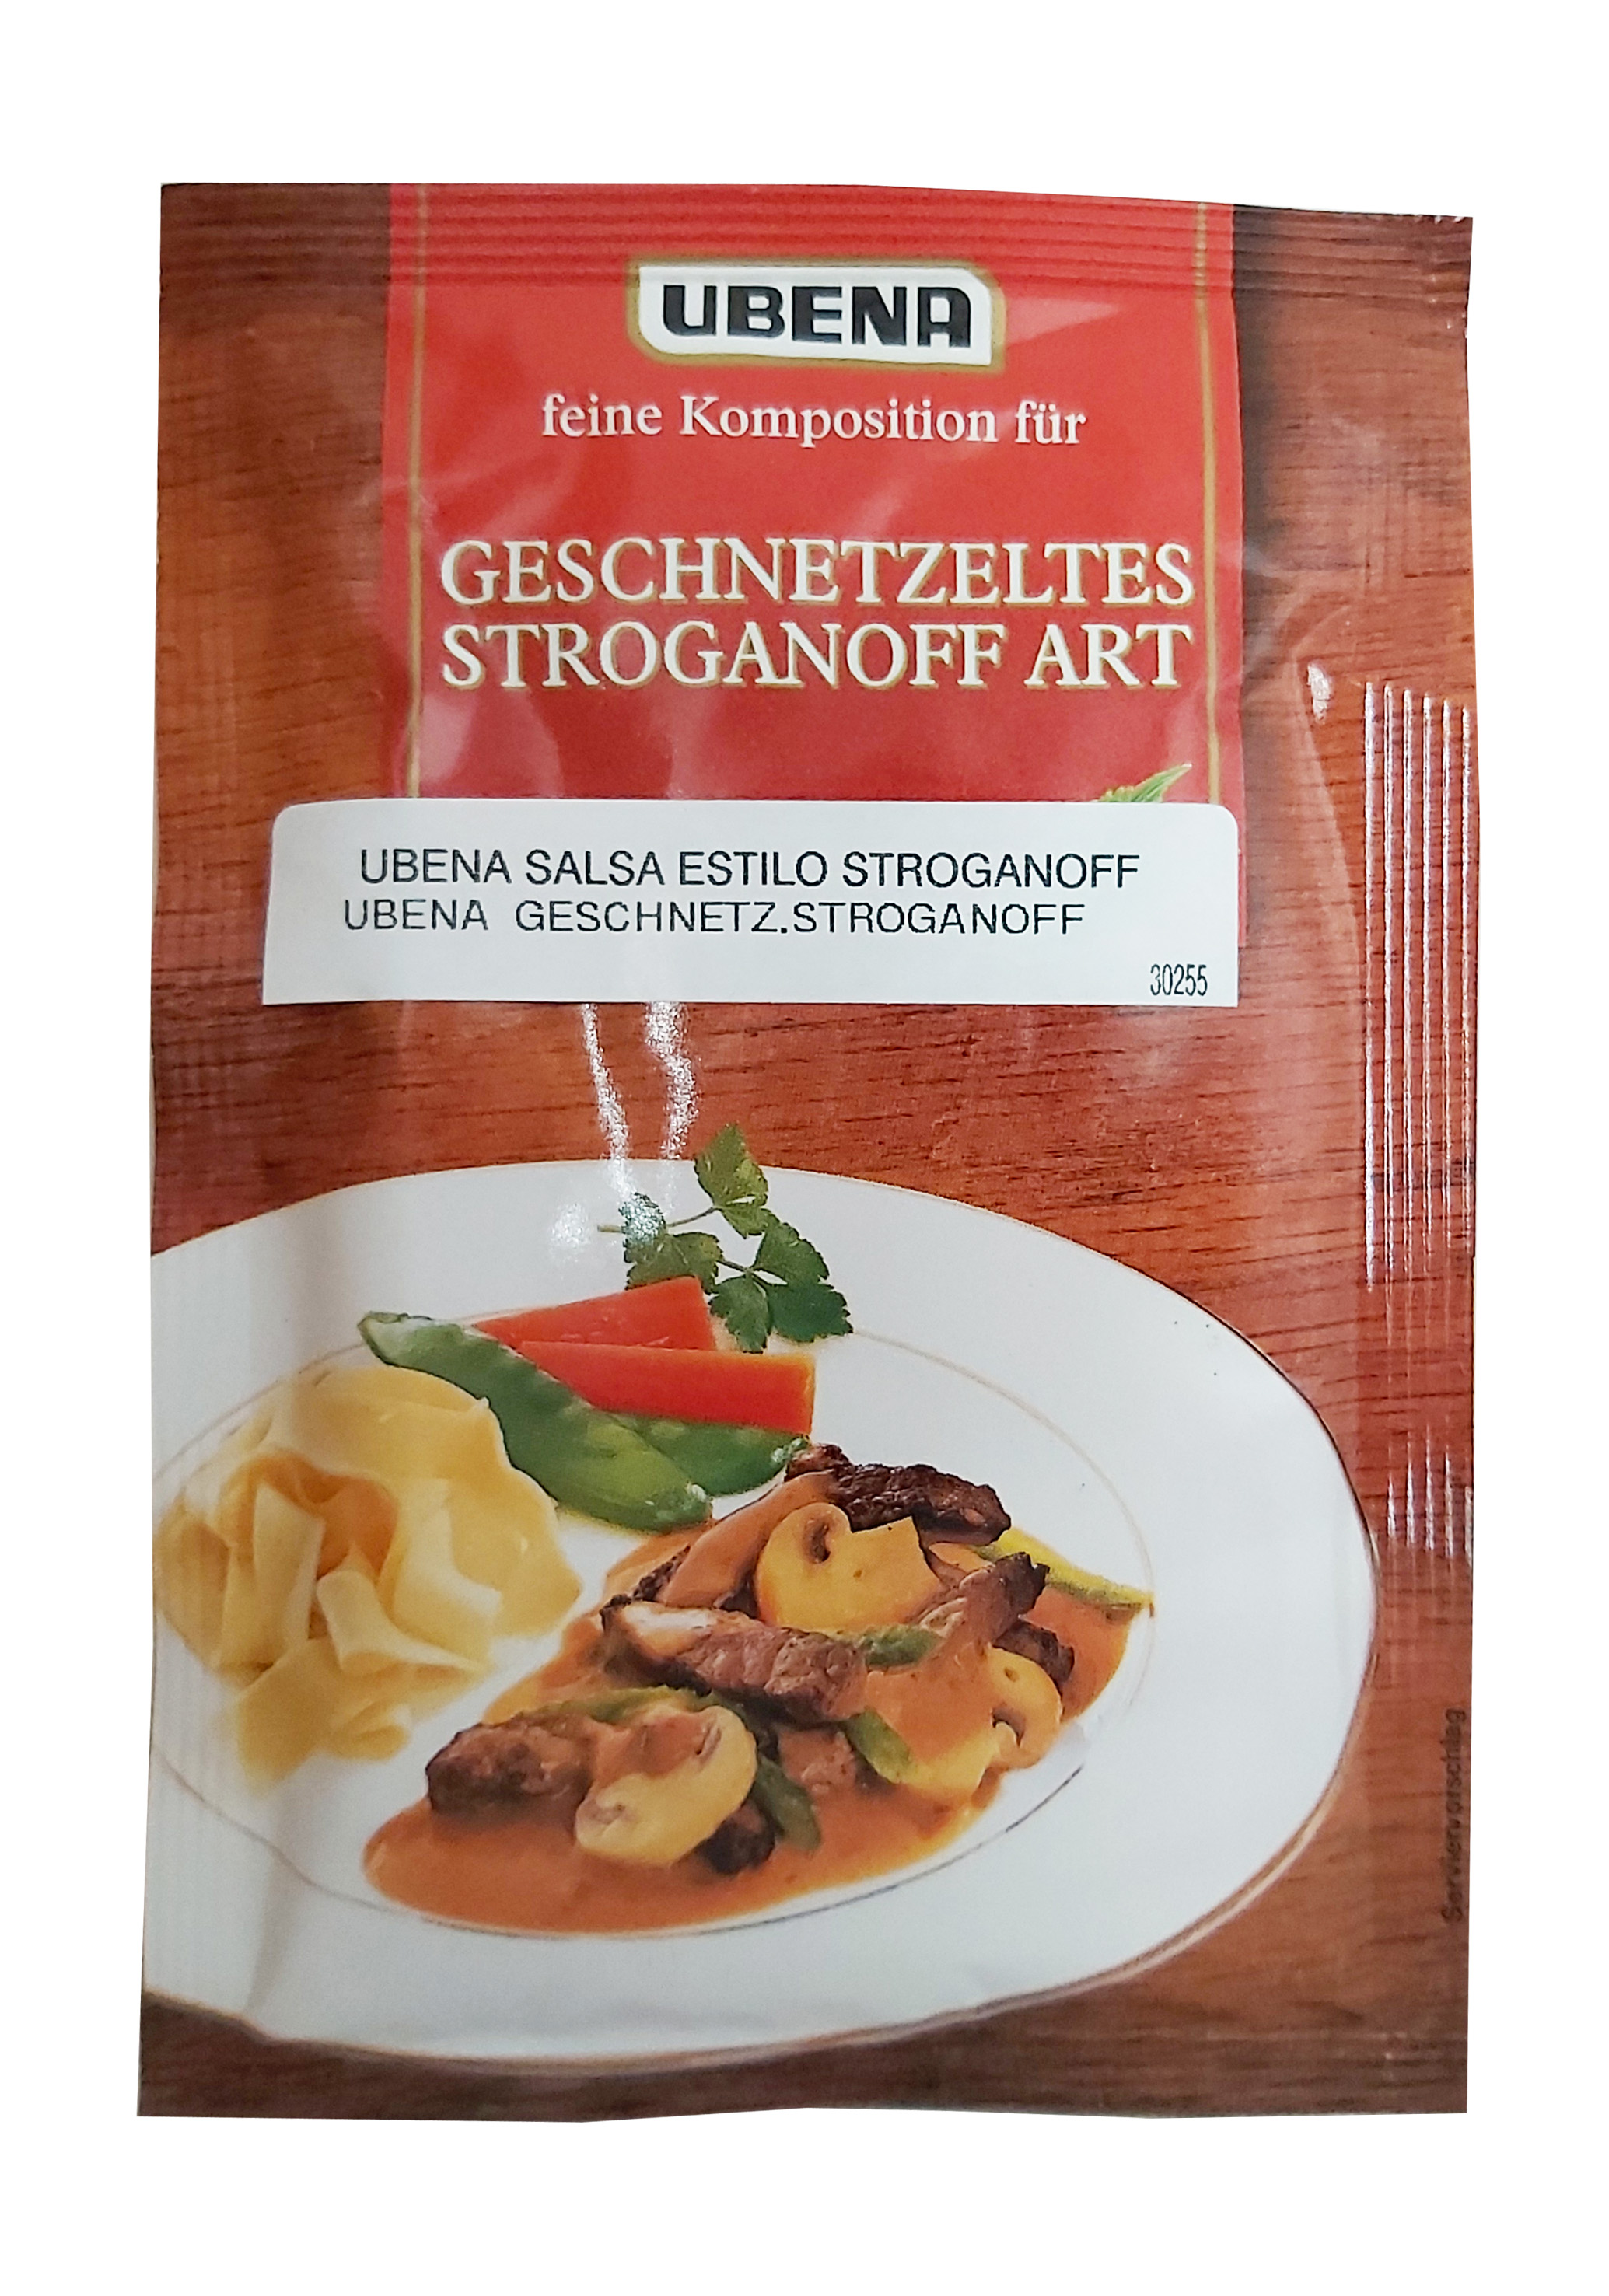 Ubena salsa estilo stroganoff